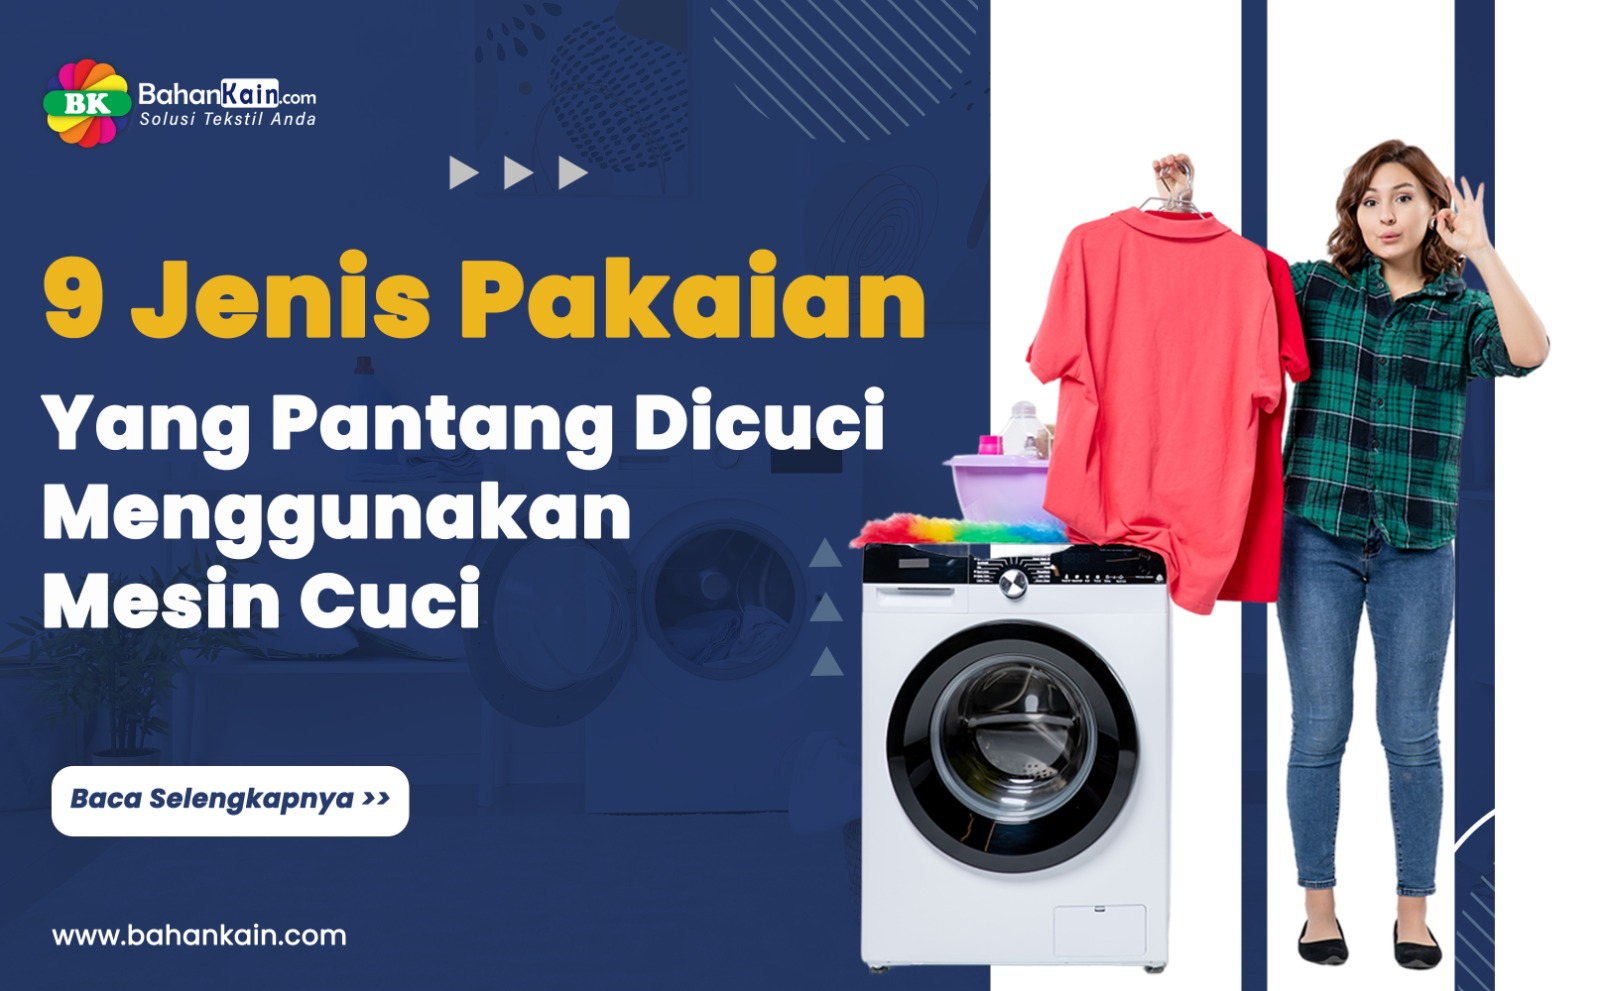 9 Jenis Pakaian Yang Pantang Dicuci Menggunakan Mesin Cuci